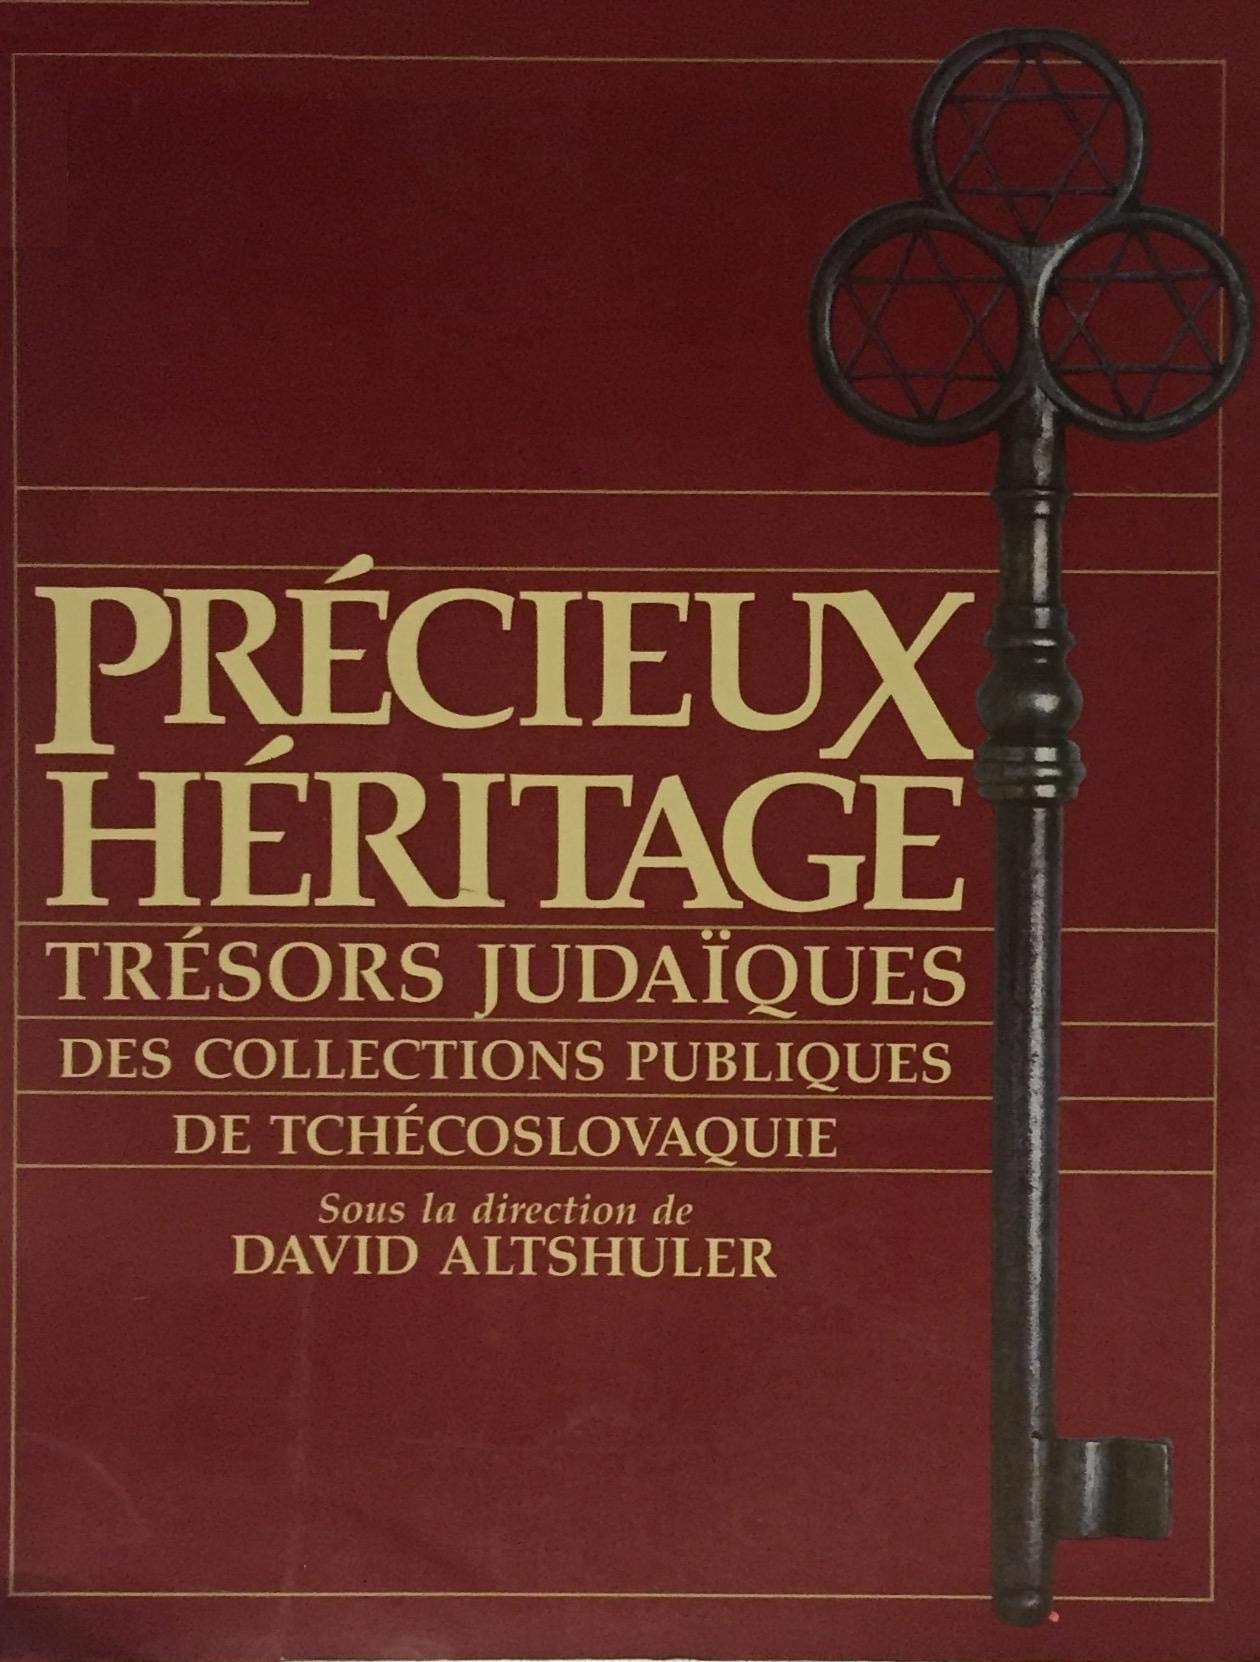 Livre ISBN 2891920724 Précieux héritage : trésors judaïques des collections publiques de Tchécoslovaquie (Sous la direction de David Altshuler)